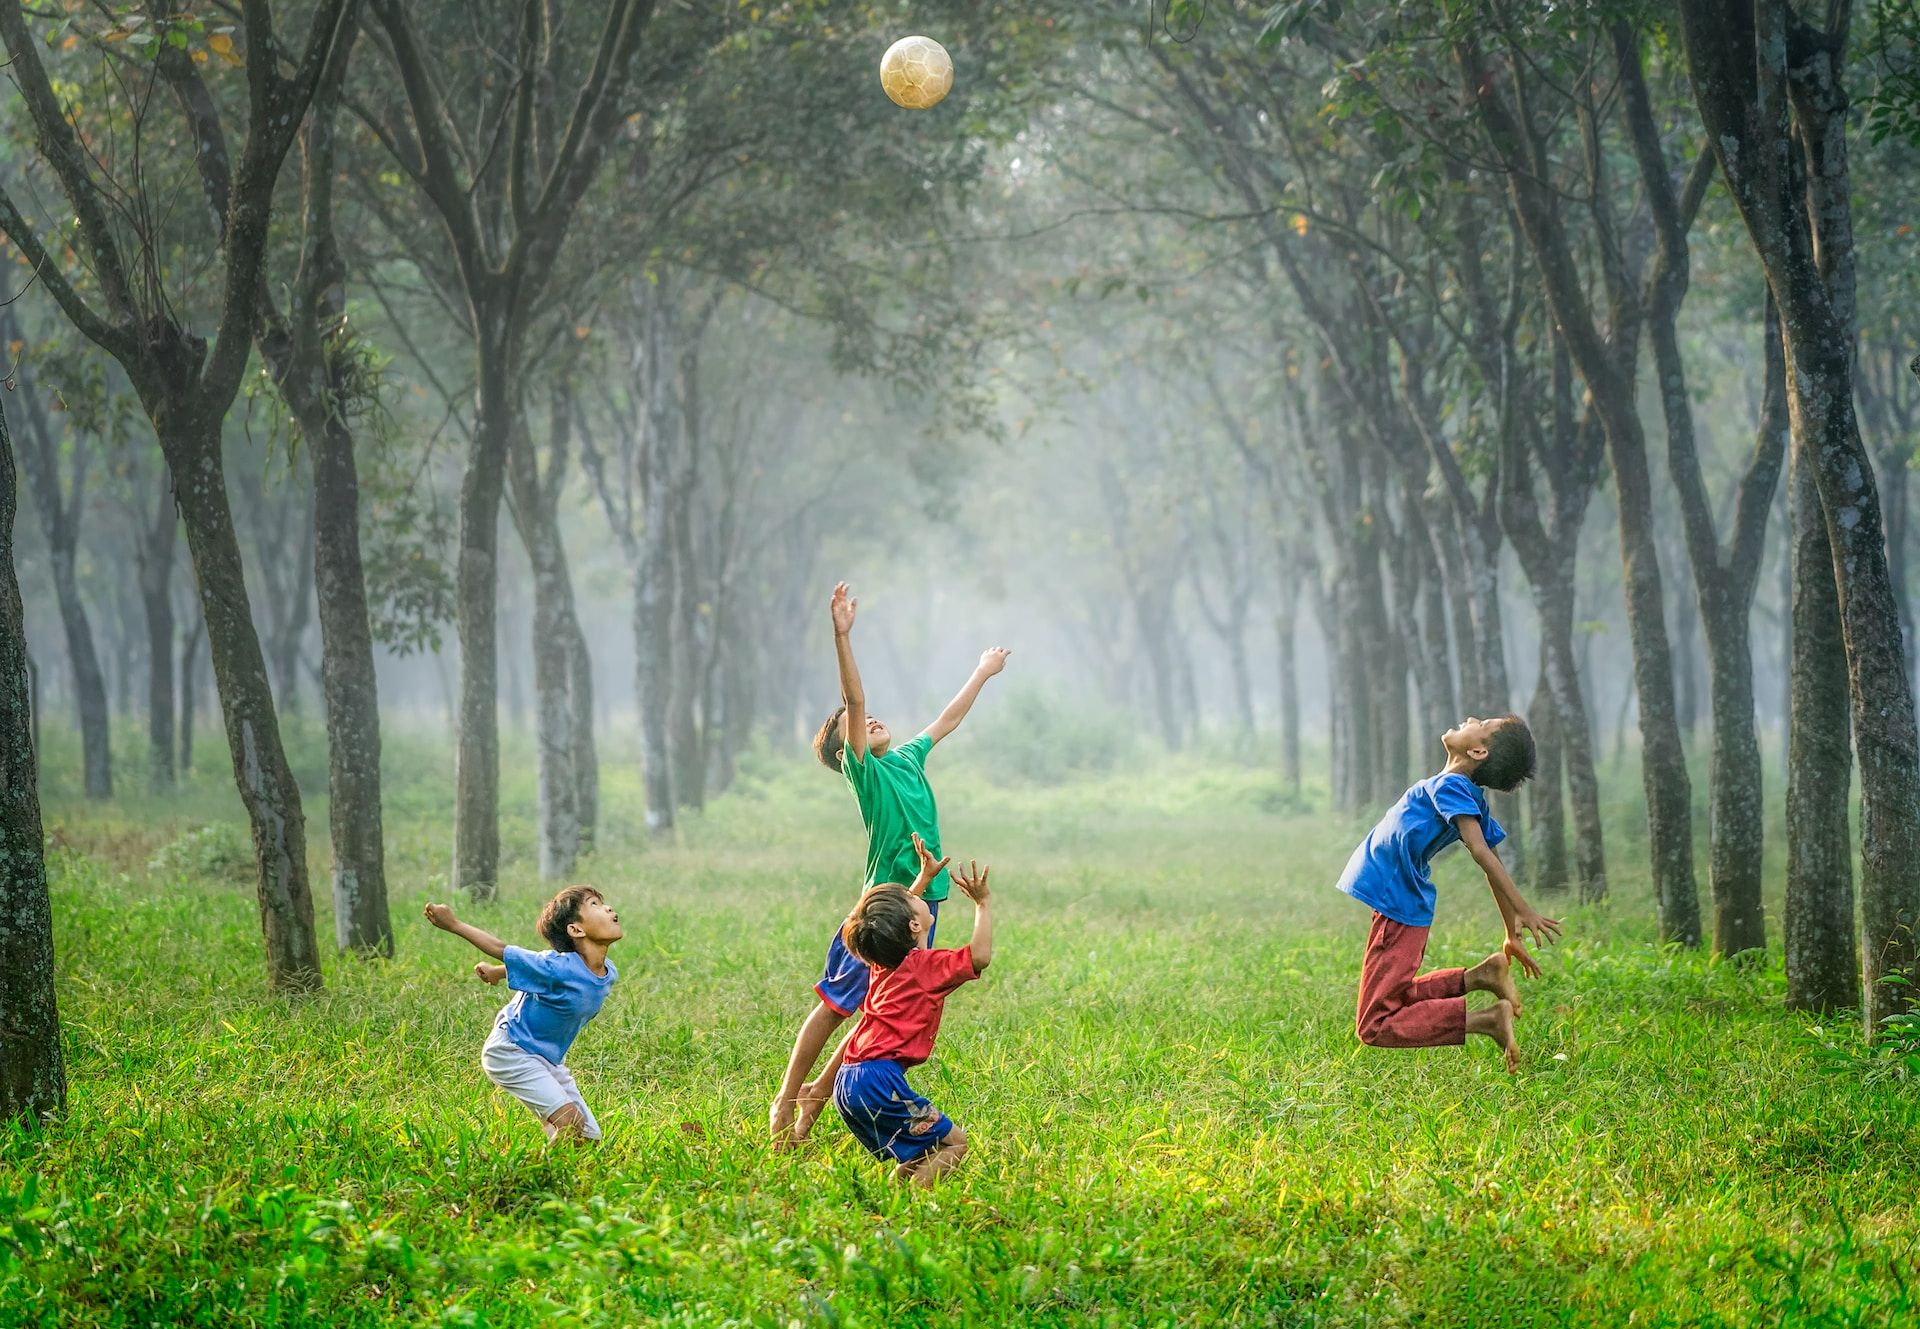 enfants jouant au ballon dans une prairie bordée d'arbres - Photo by Robert Collins on https://unsplash.com/fr/photos/tvc5imO5pXk